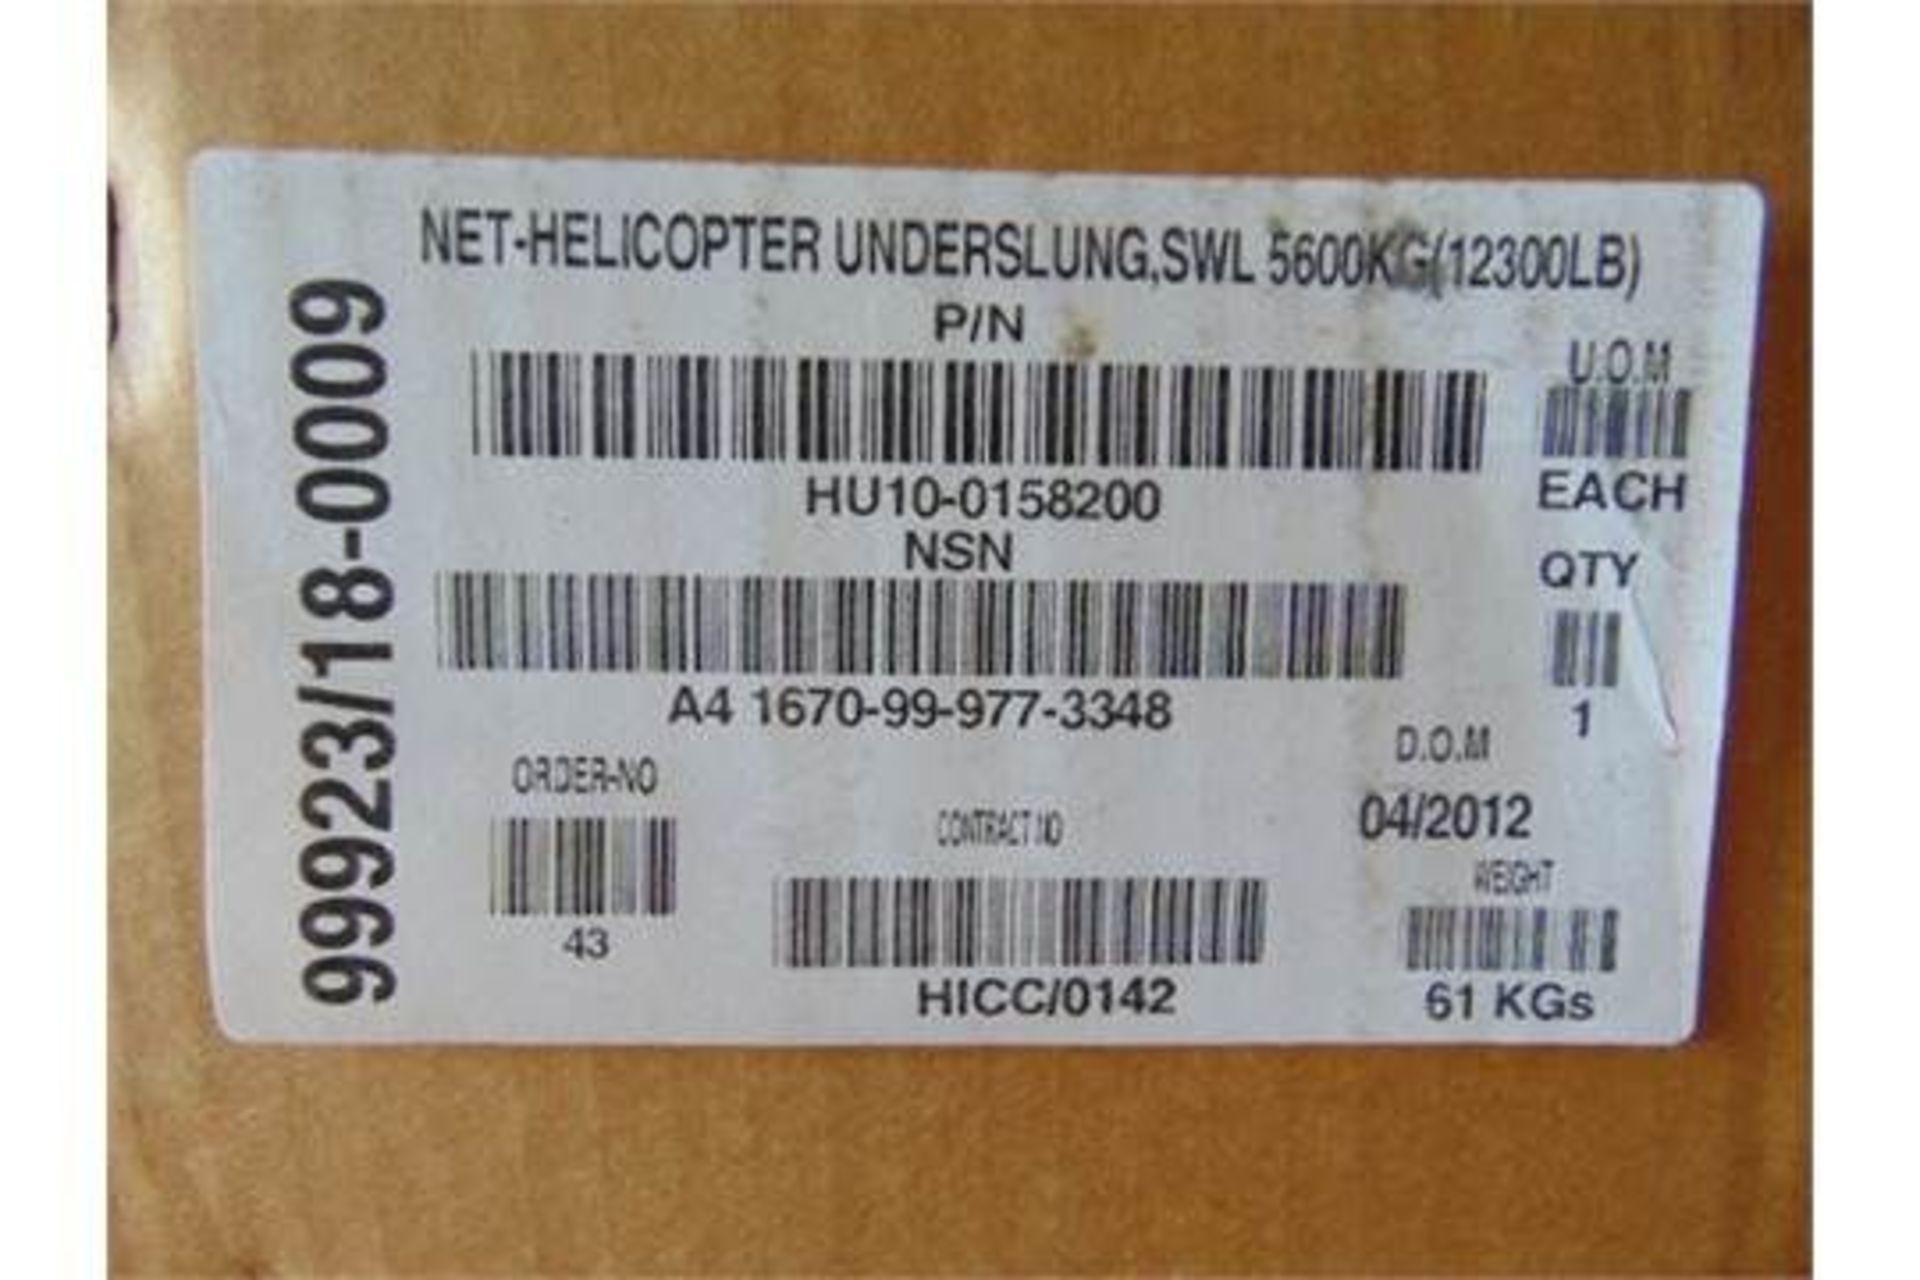 5600Kg Helicopter Cargo Net - Bild 12 aus 13